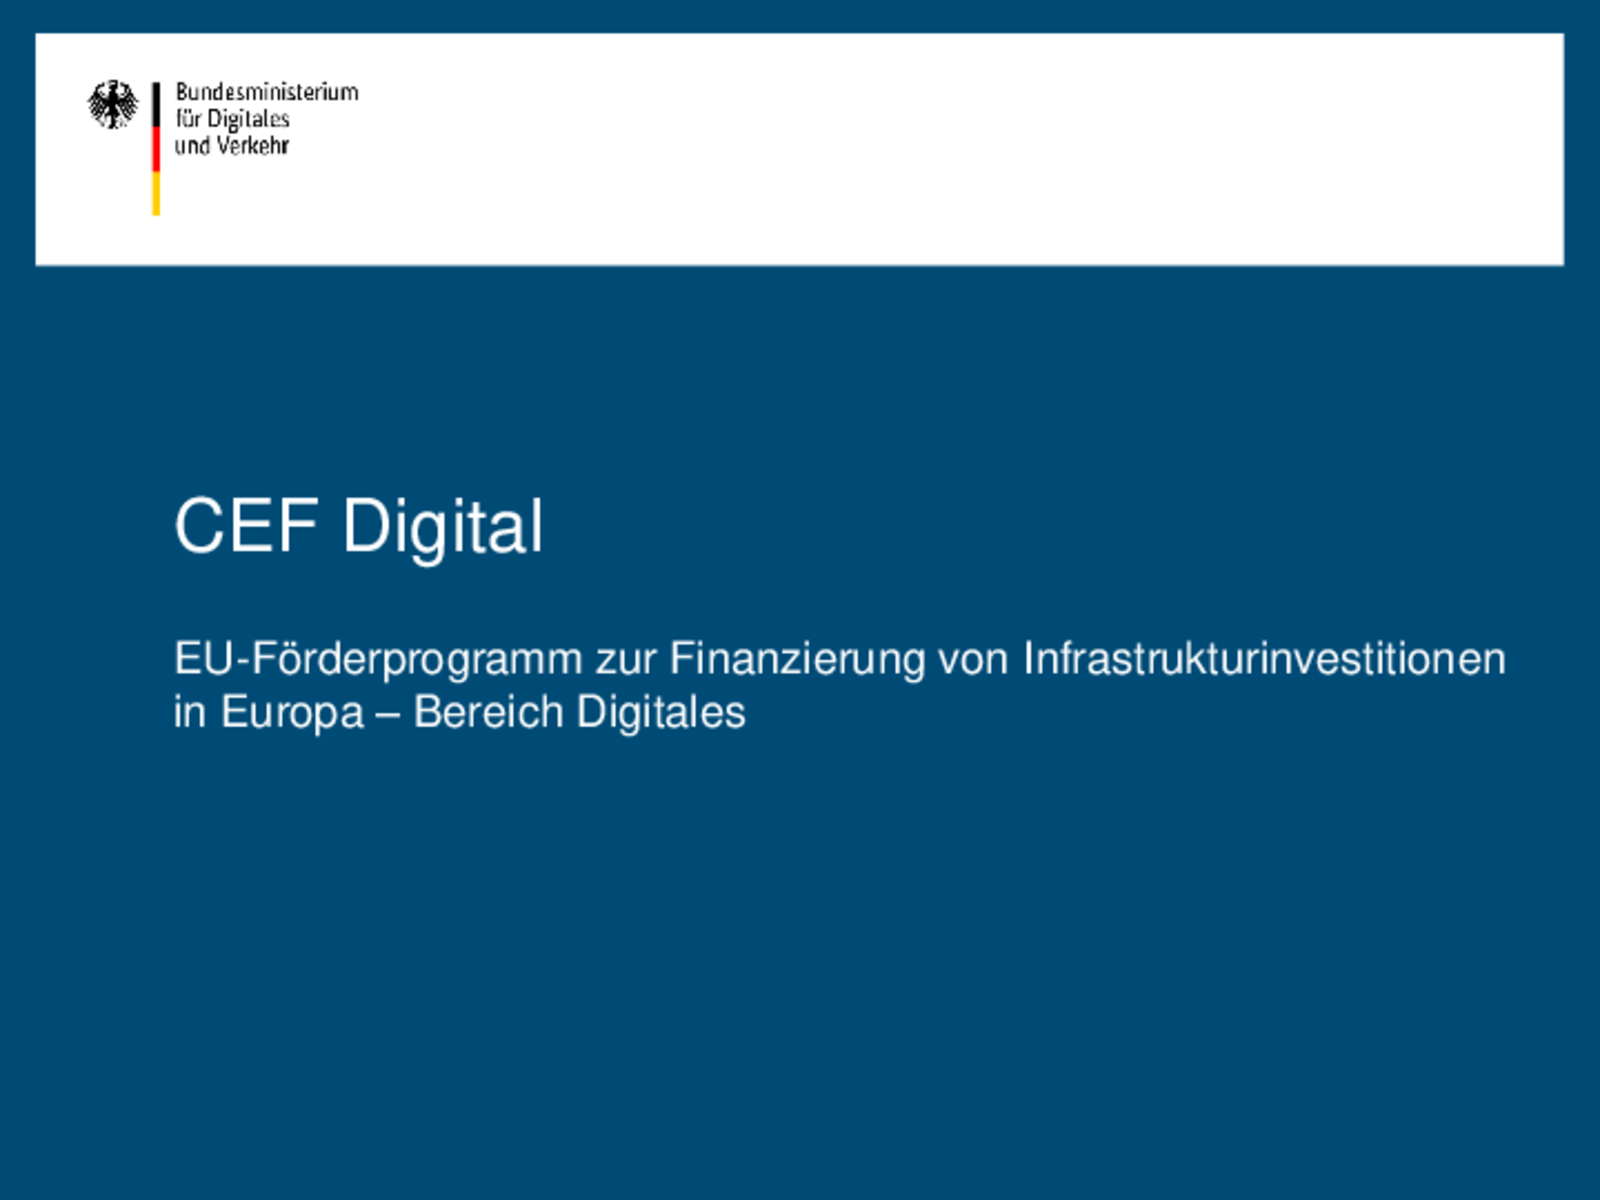 Download: Präsentation BMDV CEF Digital (PDF)